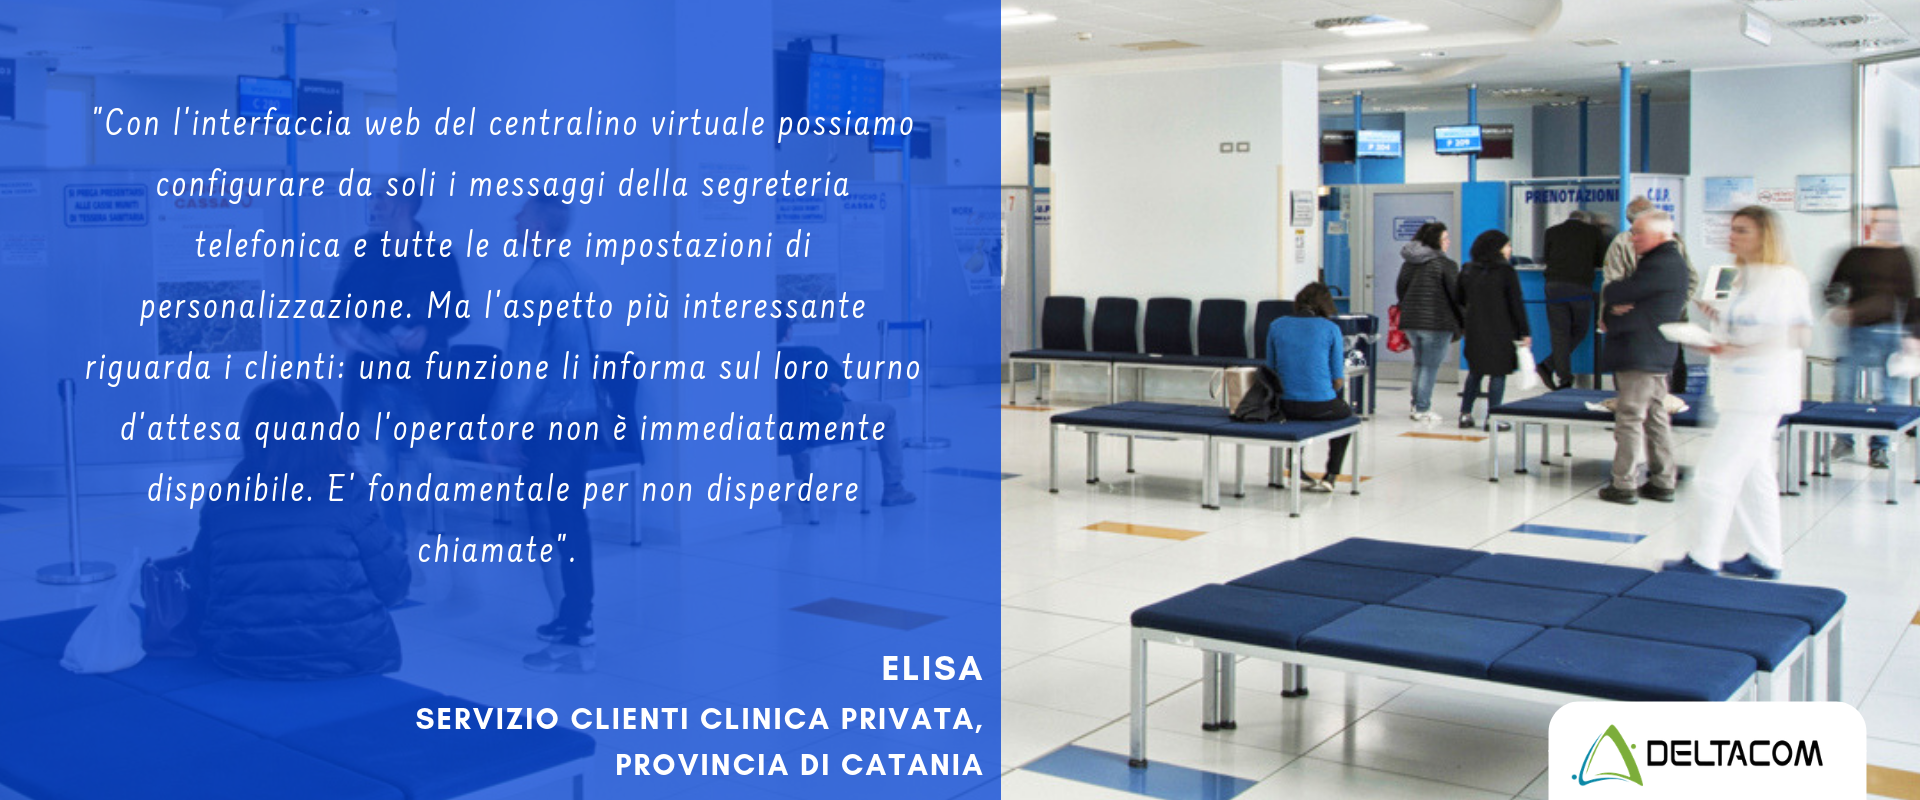 Centralino virtuale Deltacom Messina - per aziende e liberi professionisti